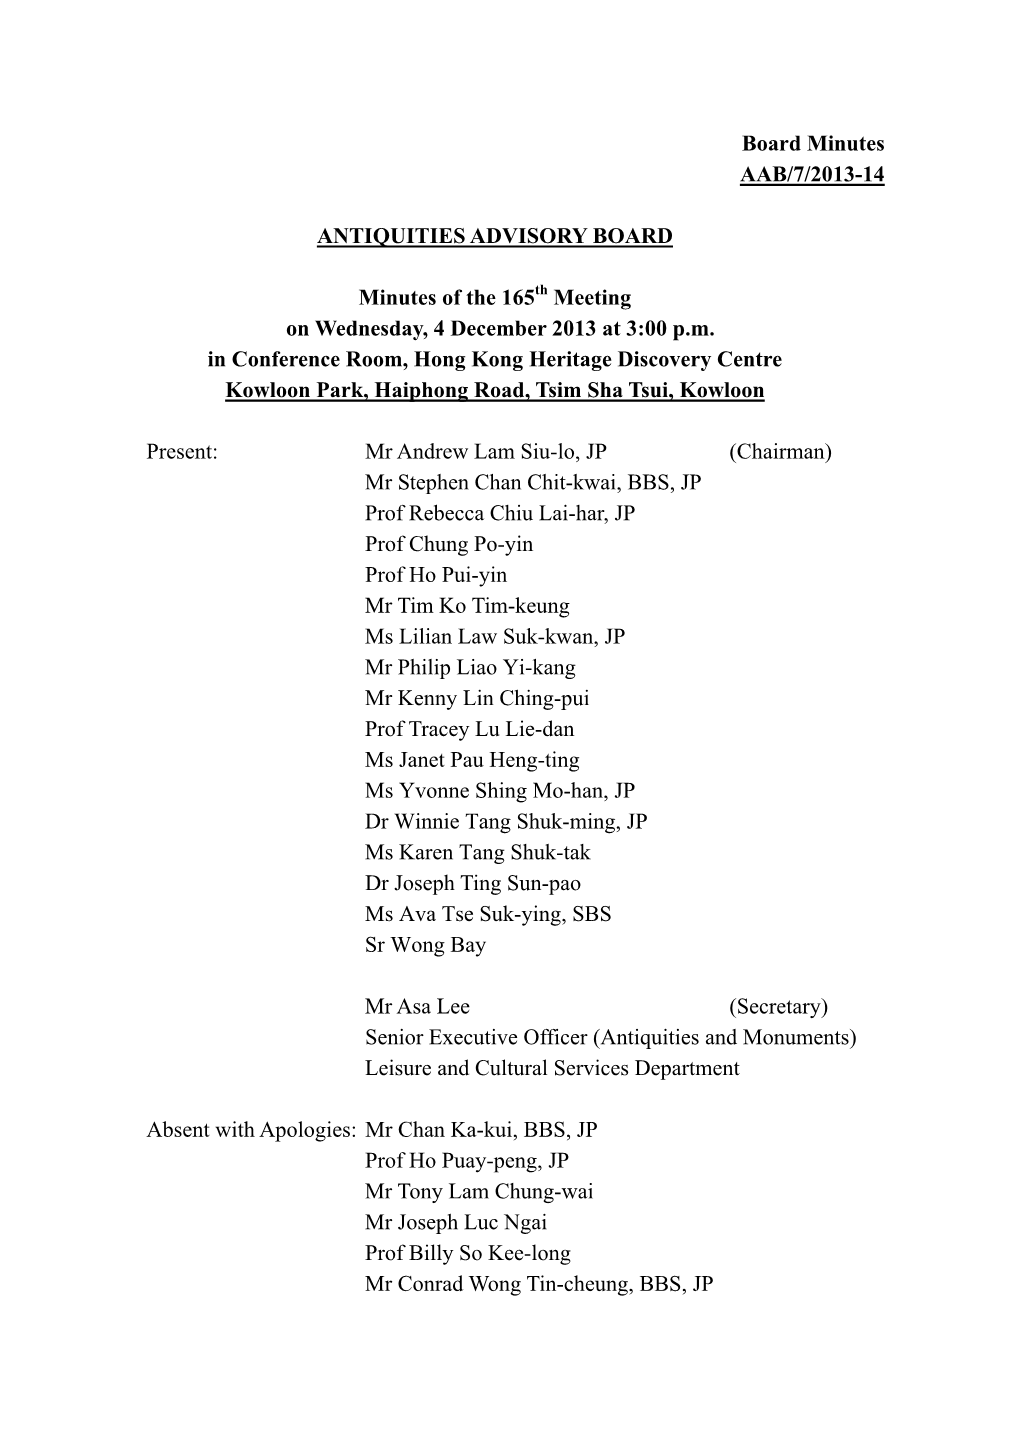 Board Minutes AAB/7/2013-14